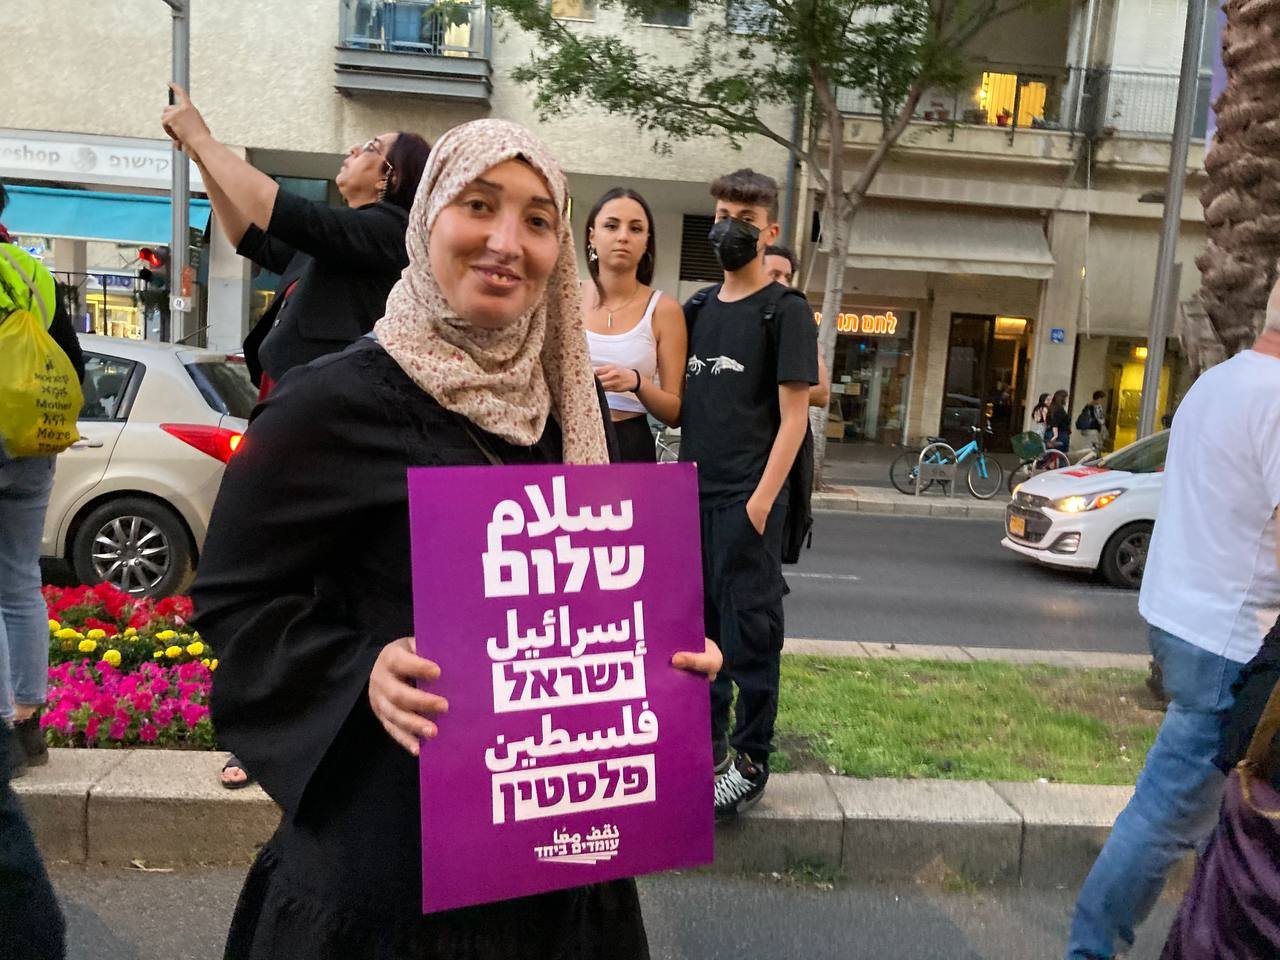 أصداء واسعة للمظاهرة الضخمة من أجل السلام التي أقيمت بمبادرة "نقف معًا" في تل أبيب-1